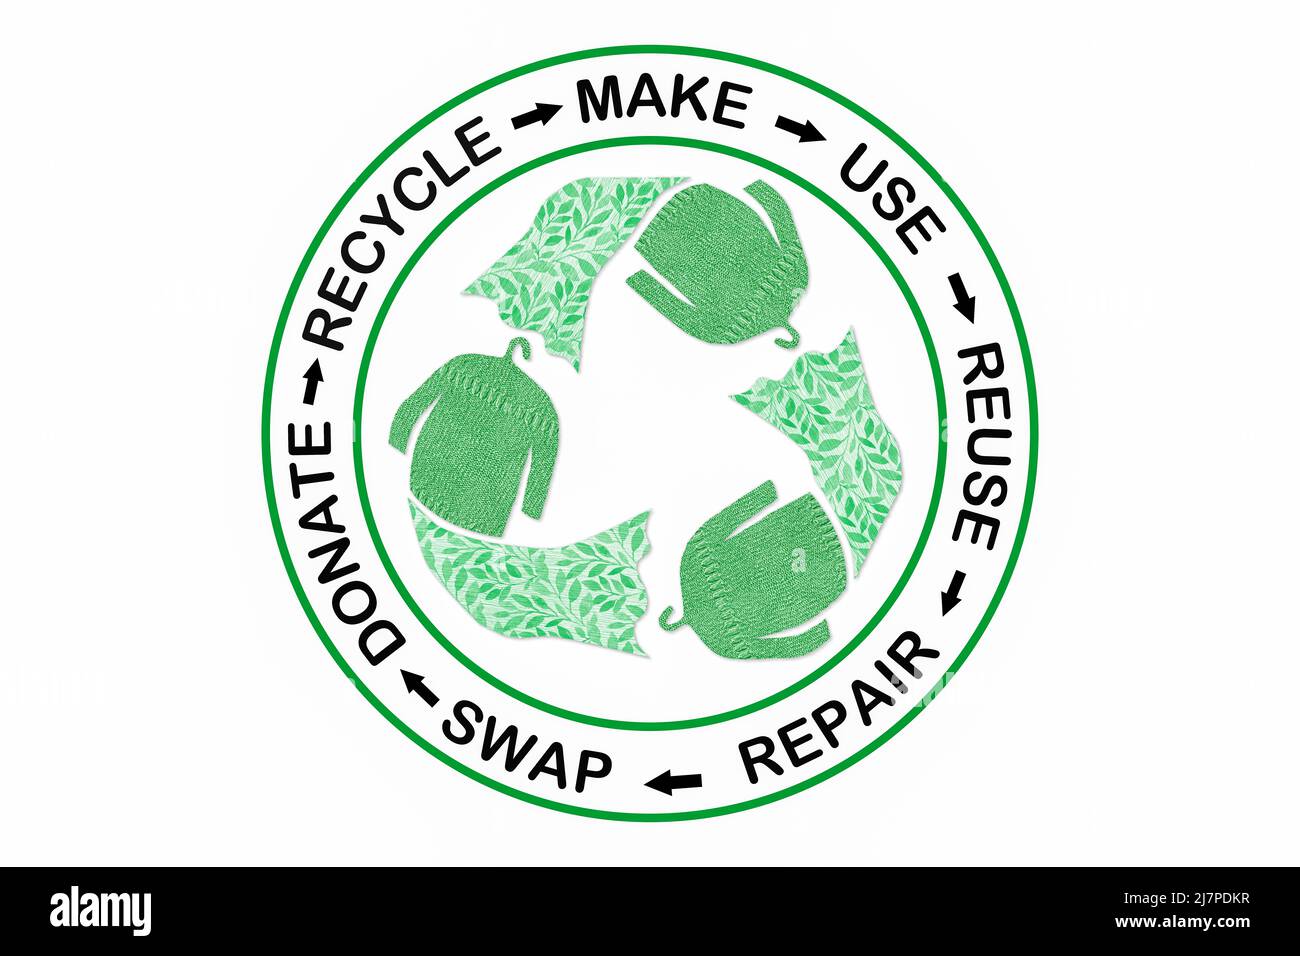 Moda circular, marca, desgaste, reparación, upcycle, intercambiar, donar, reciclar con eco ropa reciclar icono de moda sostenible concepto Foto de stock